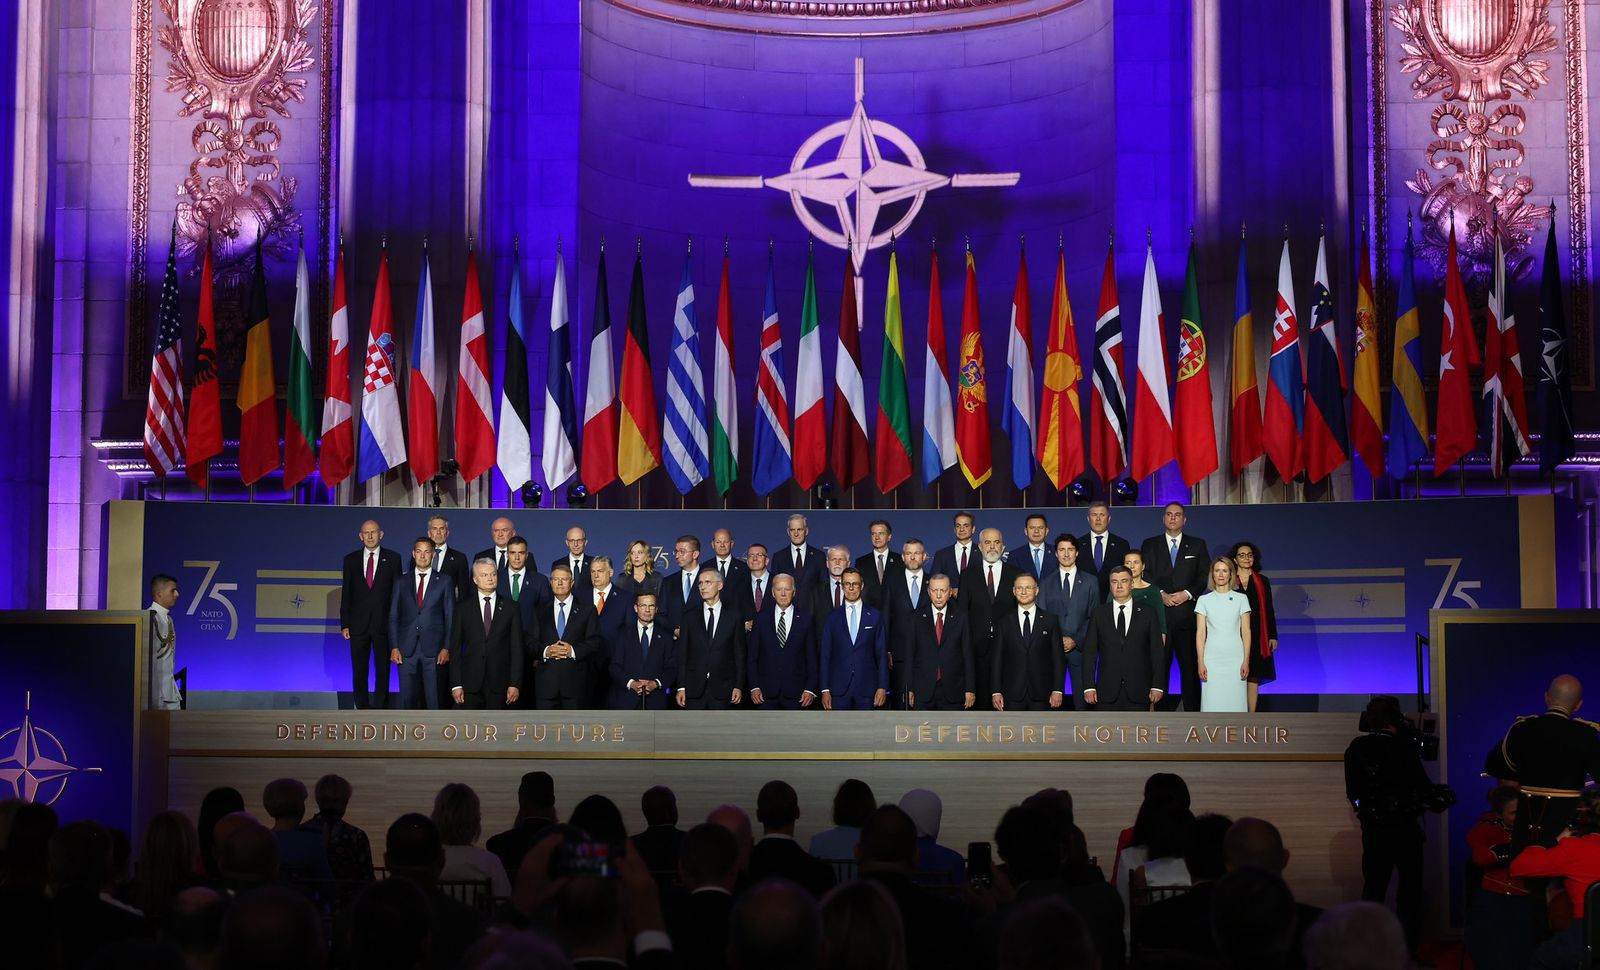 Джейхун Байрамов принял участие в мероприятии, посвященном 75-летию НАТО (ФОТО)